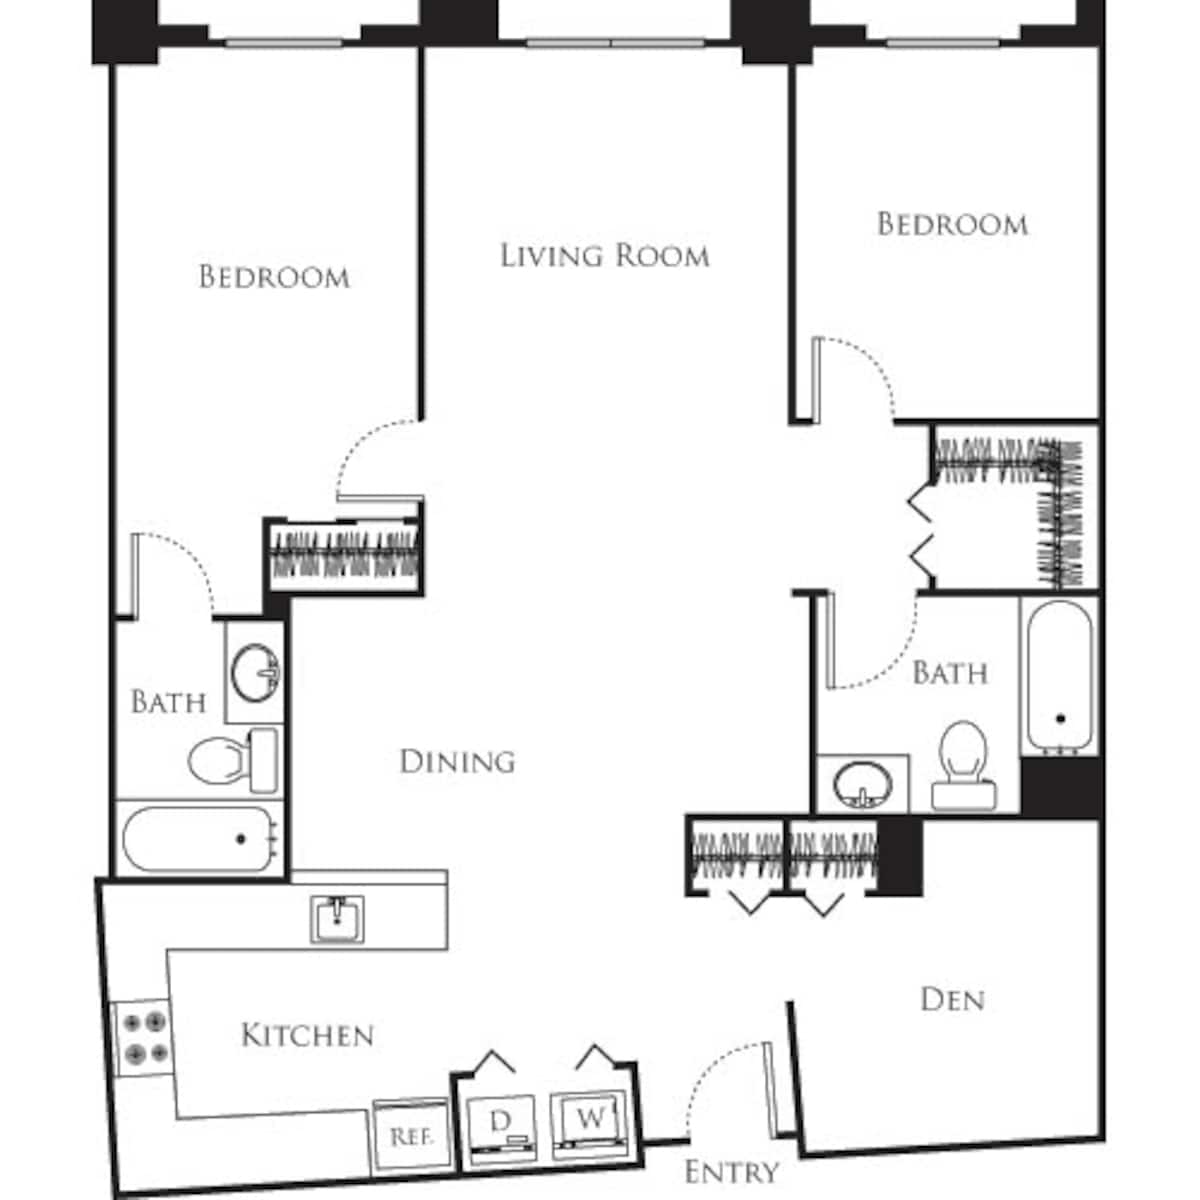 Floorplan diagram for Aristocrat with Den, showing 2 bedroom